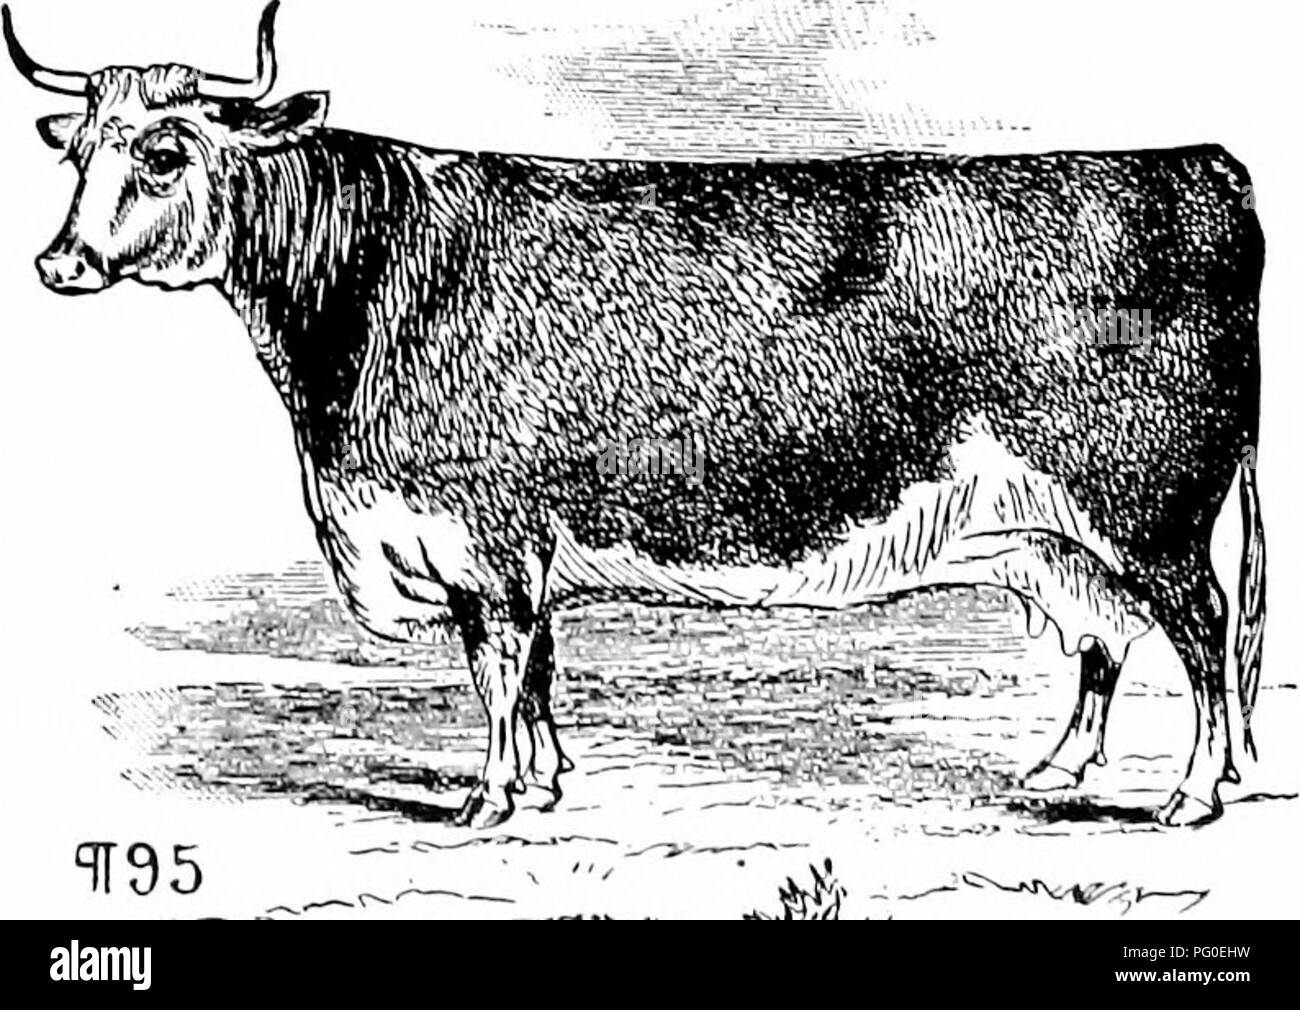 . Histoire de bovins Hereford : prouvé de façon concluante la plus ancienne d'espèces améliorées . Bovins Hereford. 140 HISTOIRE DE L'IlEREFOED bovins produites bv M. Turner, acheté par M. Hewer pour RTI. James Walker, et l'onFv raison 1 modifié son nom était 1 avait un nommé "spot" imjiortation tirst en mv. "1 vous donnera une vue sur l'élevage des moutons niv à une période. 1 pense que rien n'est un meilleur test pour pirotitable d'animaux que ceux qui obtiennent le plus grand poids de l'alimentation animale avec le moins de légumes. "Wm. Hy. 80THAM. -Fereh Lake Farm. Avril, 1841." nous donne maintenant une lettre de M. Win. Kin Banque D'Images